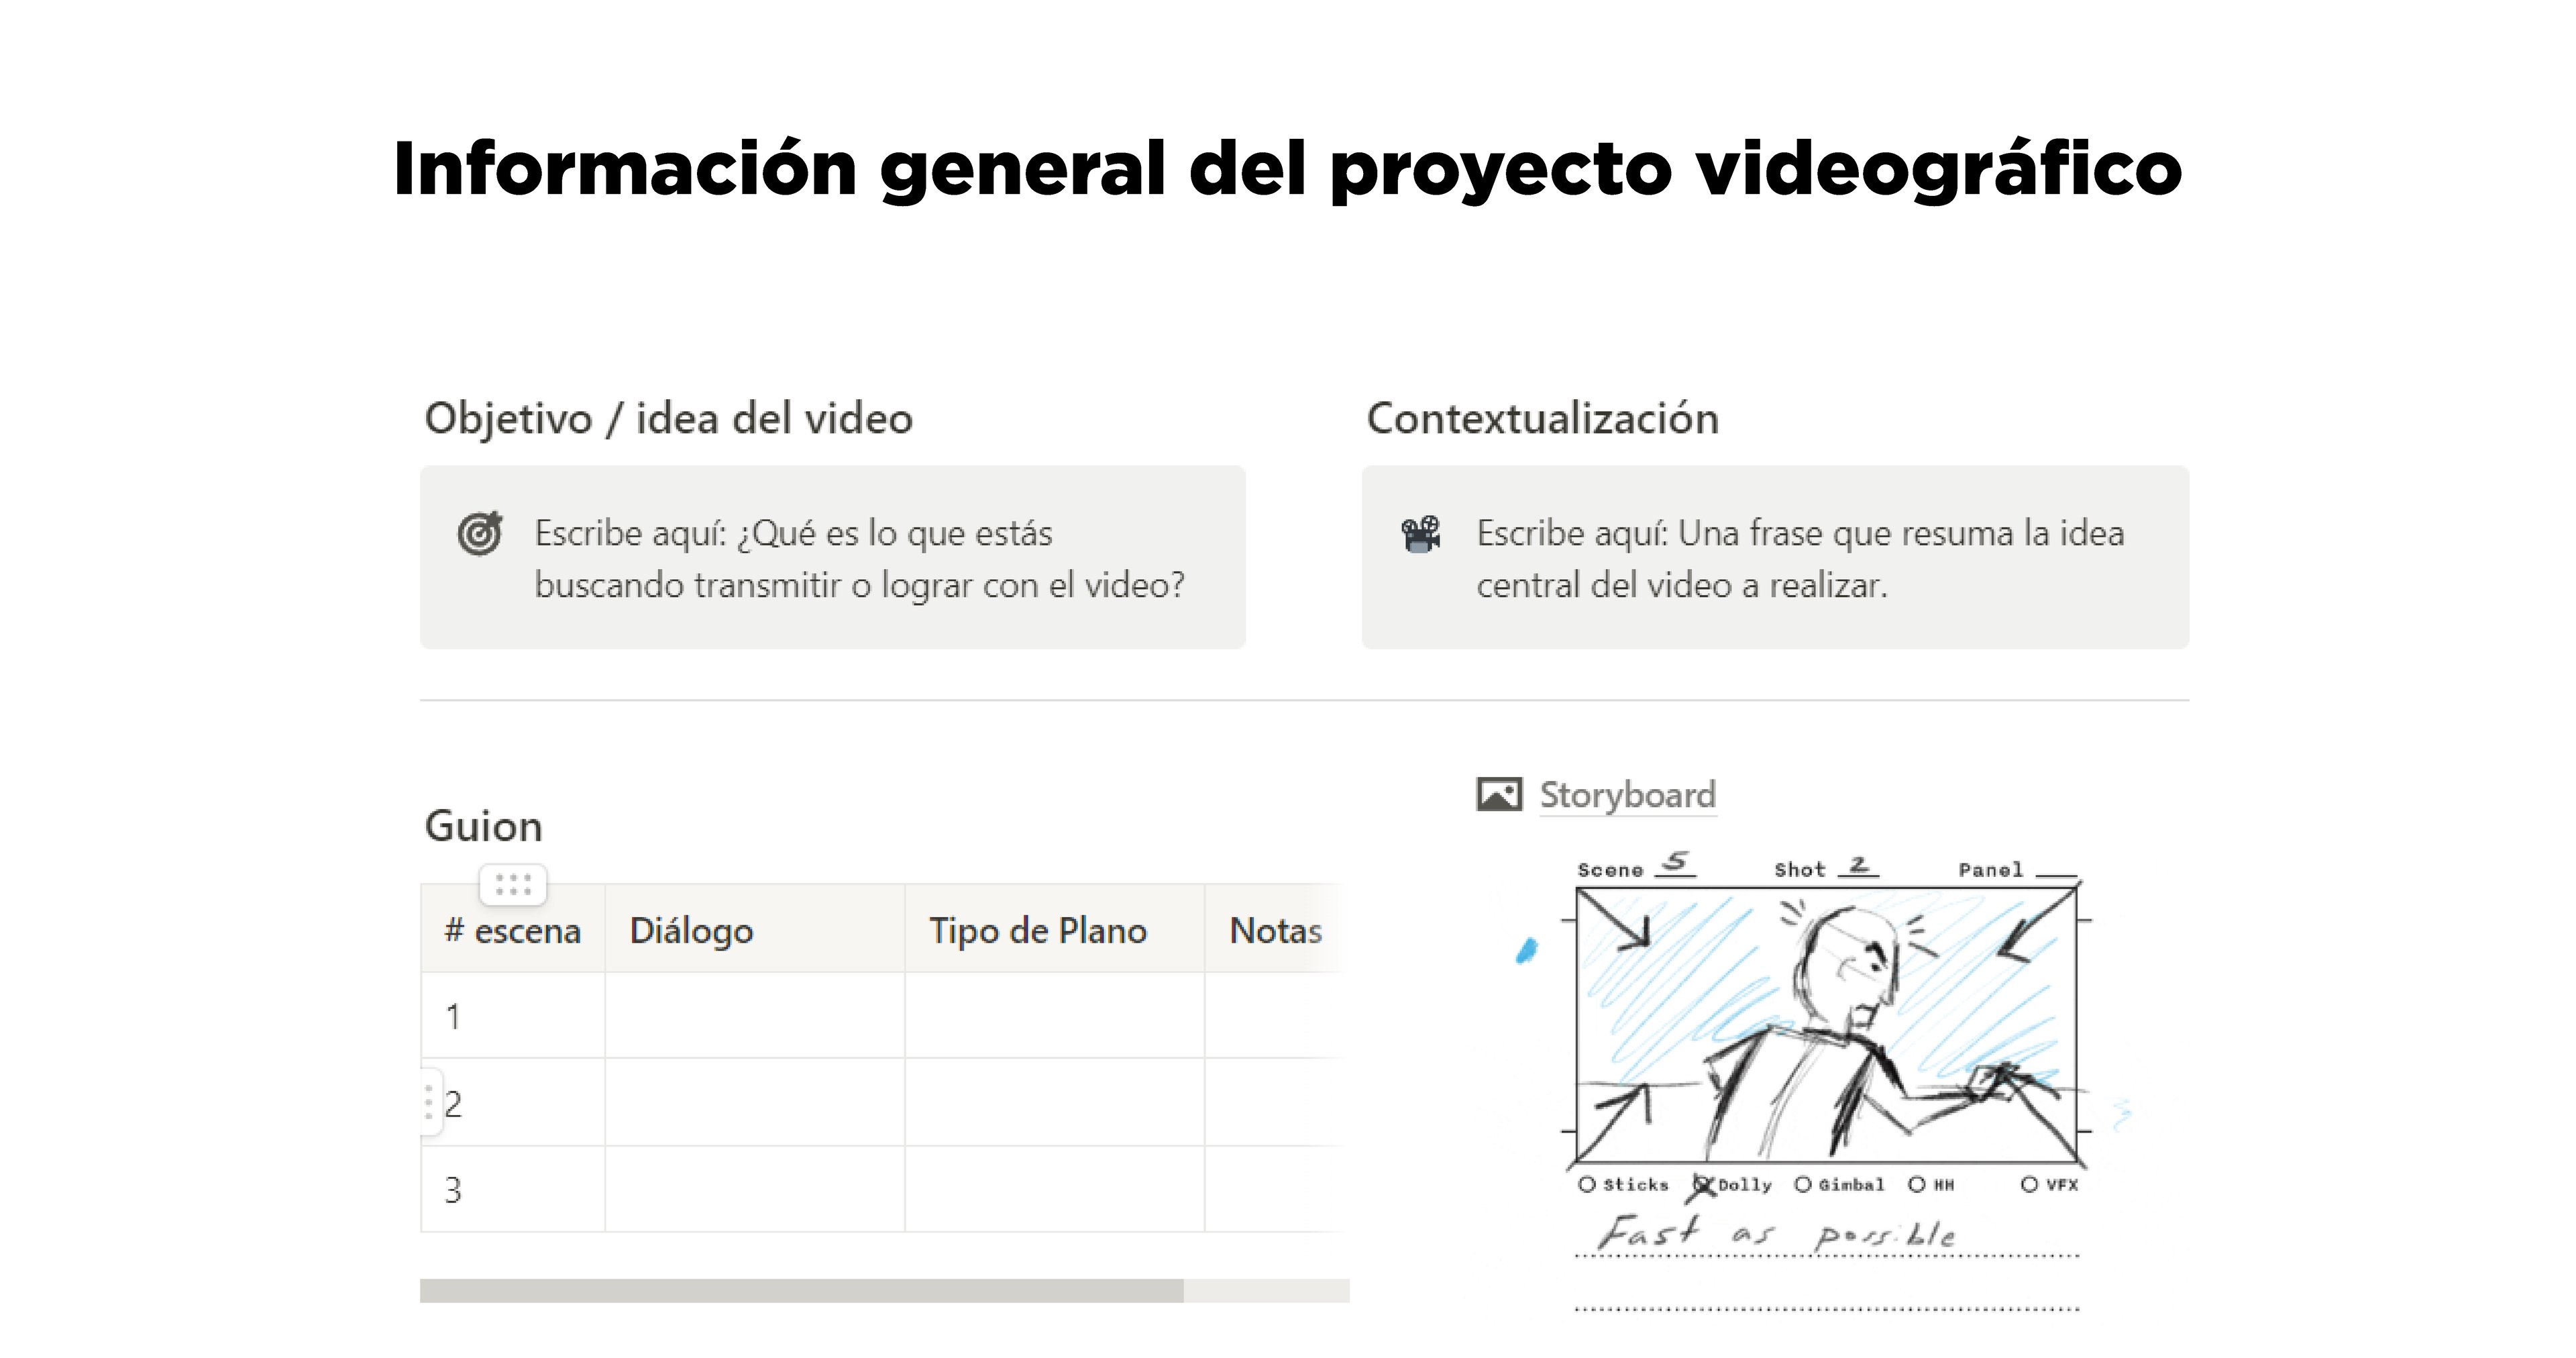 Herramienta diseñada para ayudar a los usuarios a planificar y organizar sus videos en un formato estructurado y sistemático.